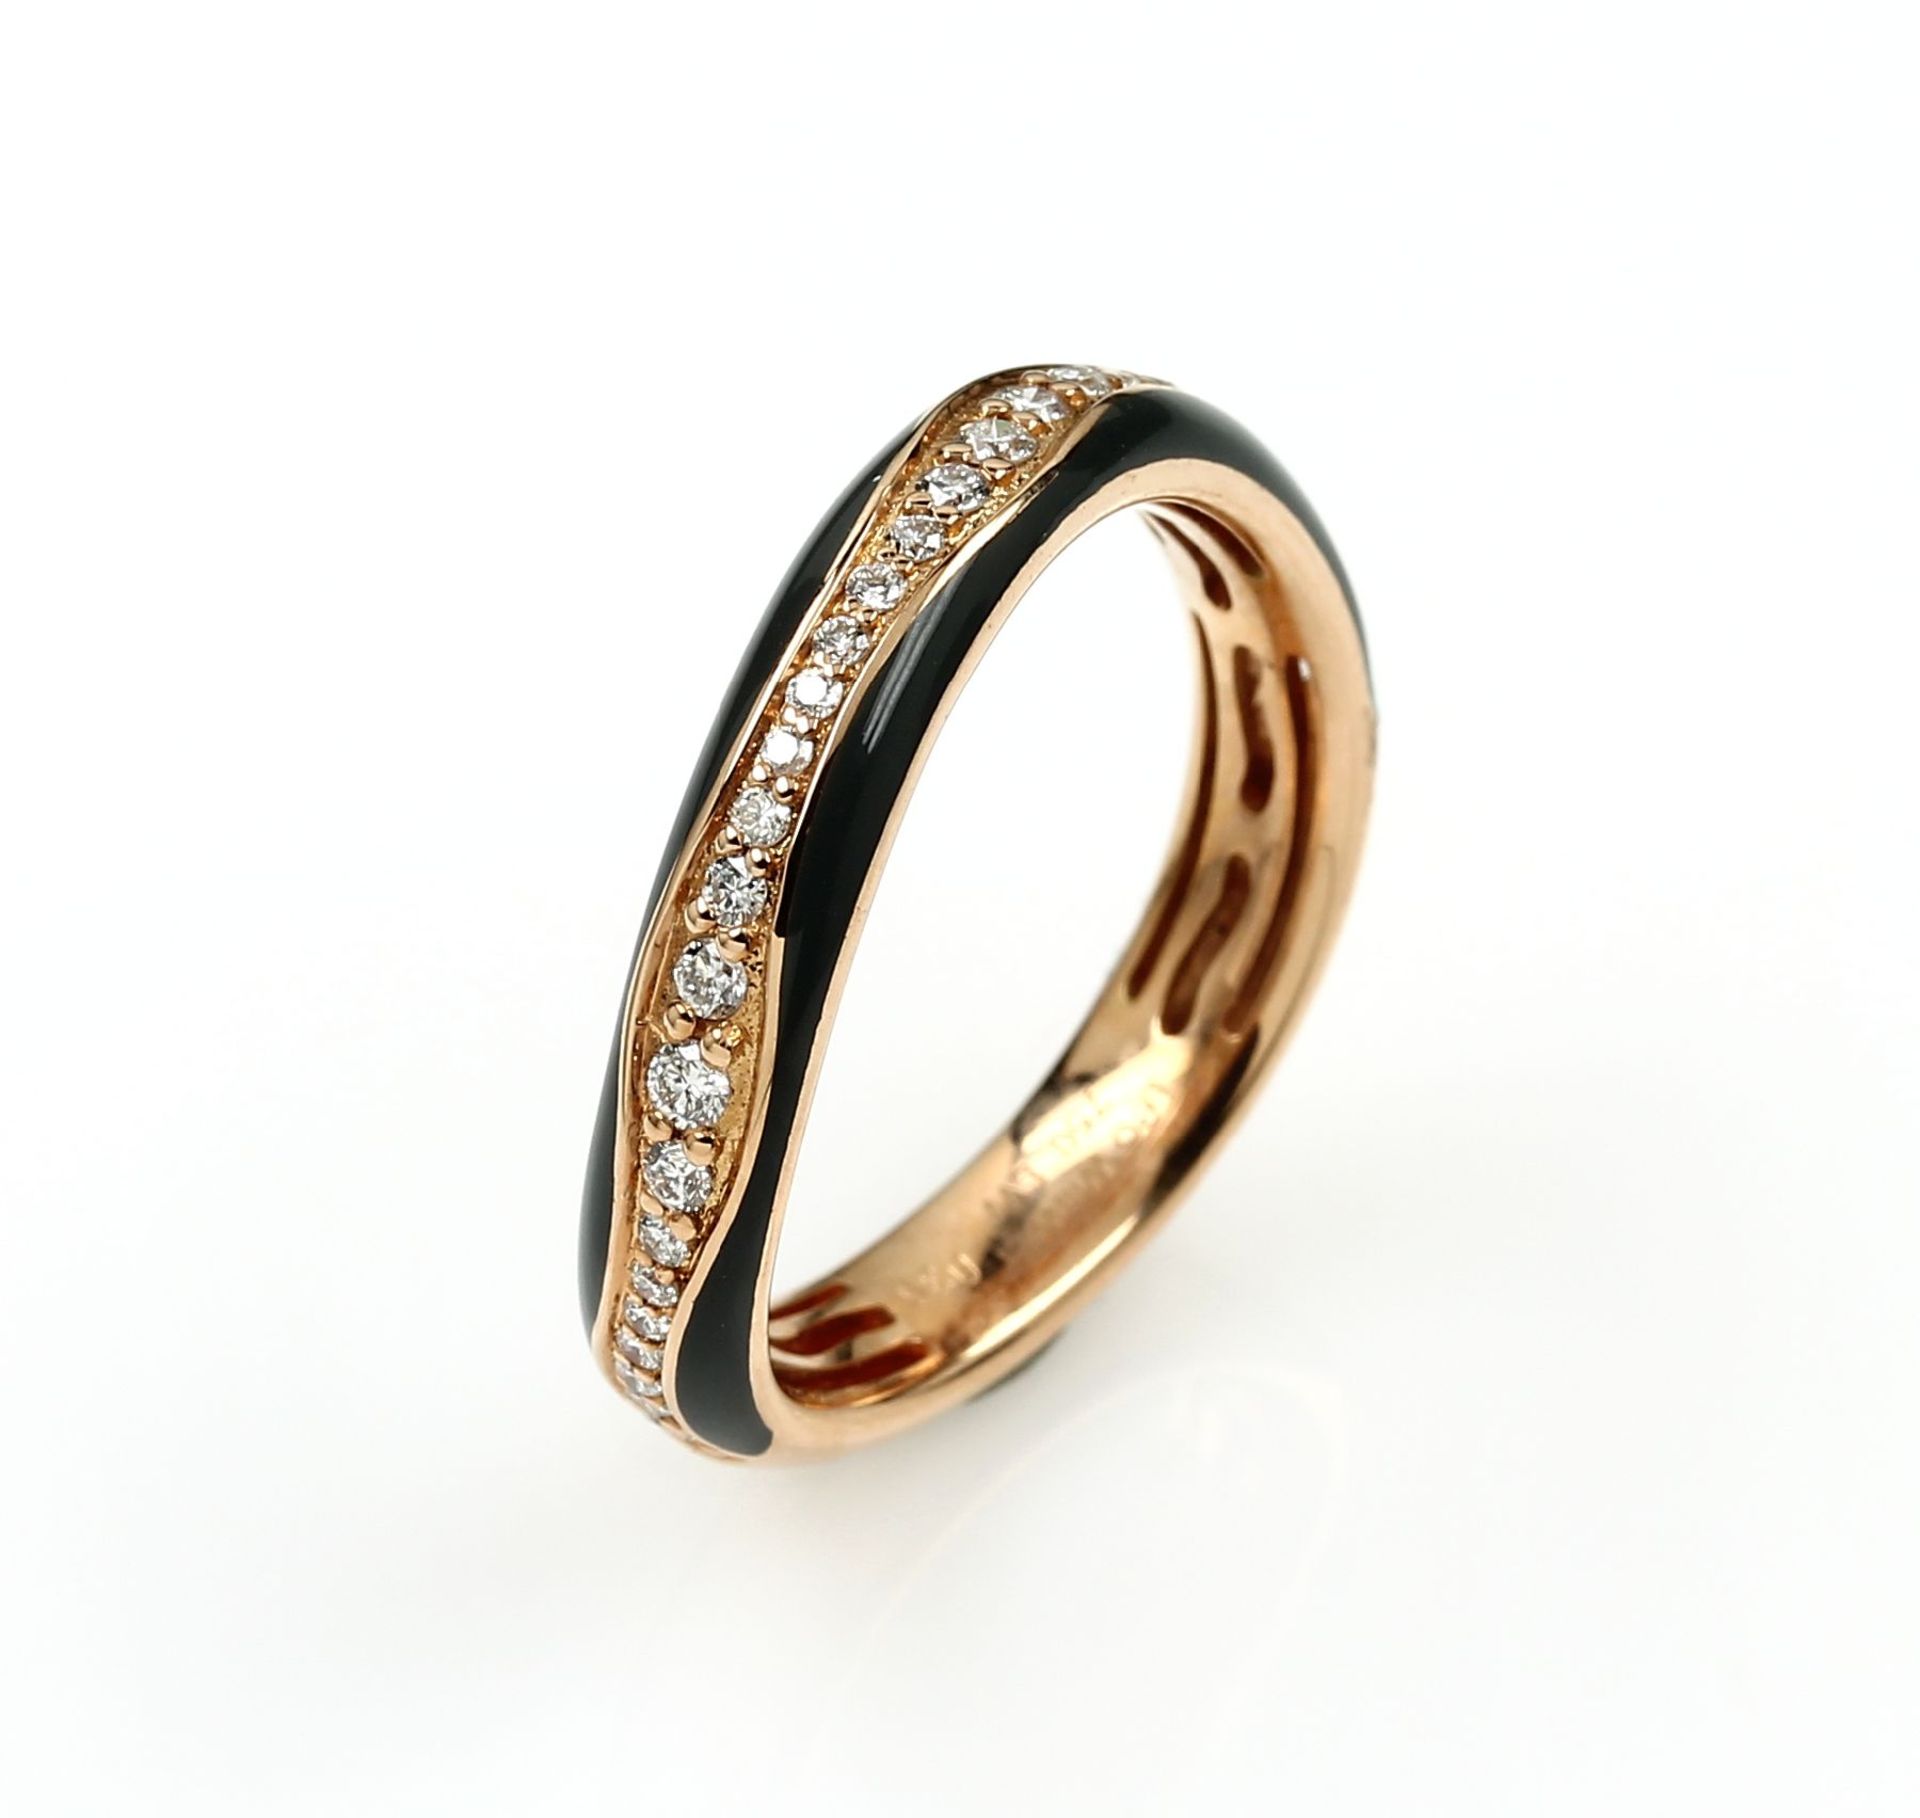 18 kt Gold LEO WITTWER Ring mit Brillanten undEmail, RoseG 750/000, asymm. Ringschiene, z.T. grau